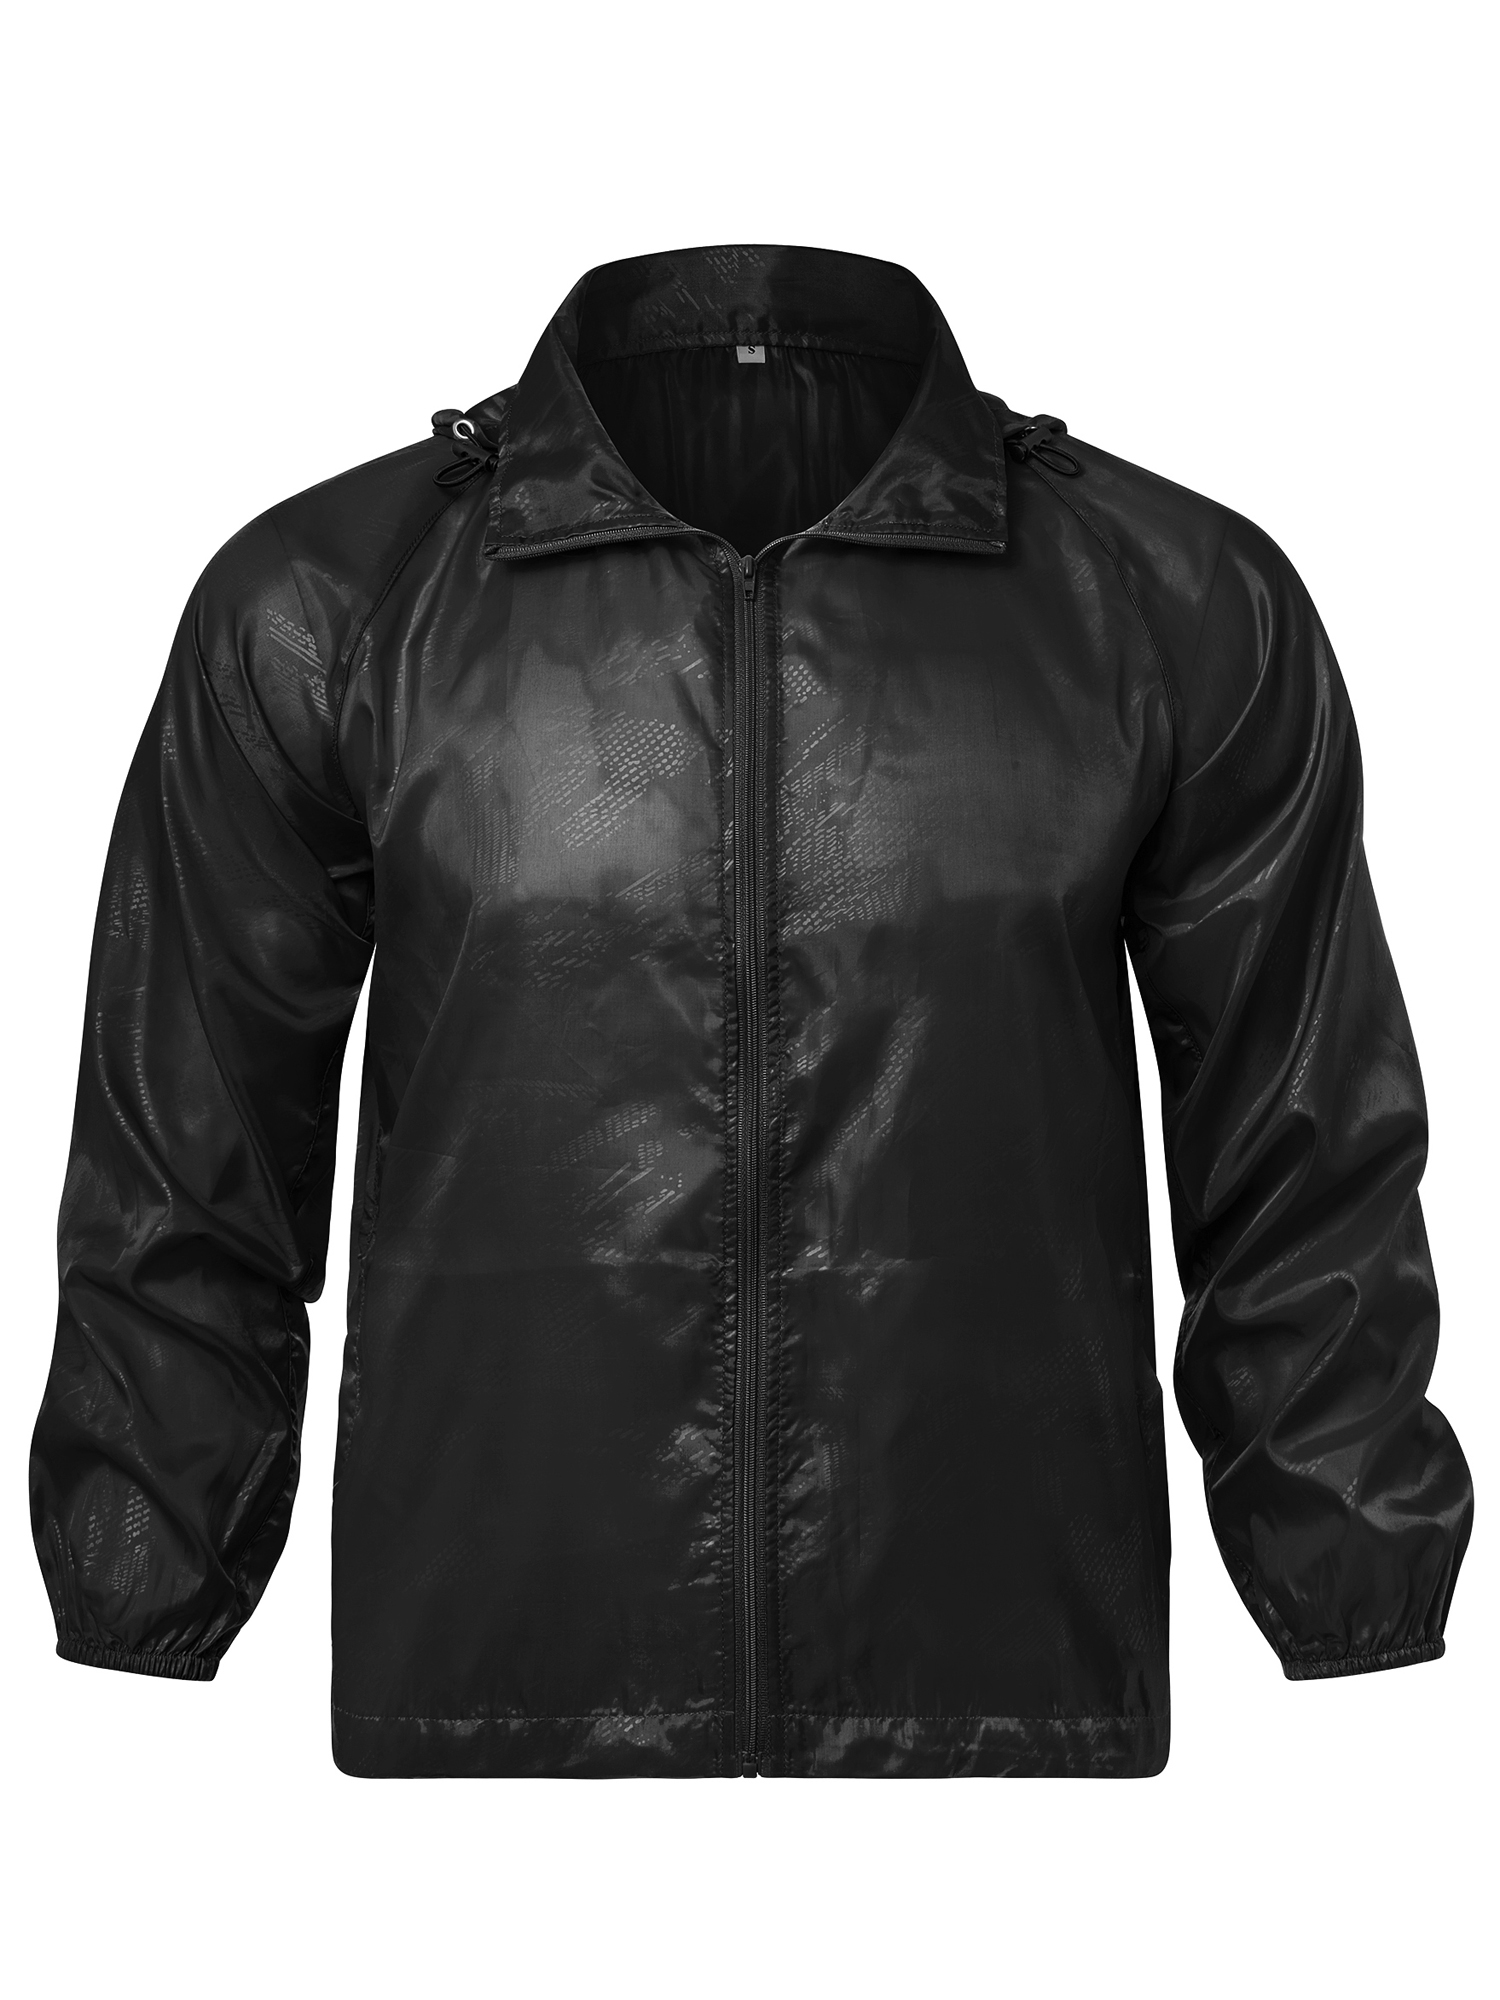 LELINTA Women Nylon Windbreaker Jacket Sport Casual Lightweight Zipper Hooded Outdoor Jacket, Black - image 5 of 9